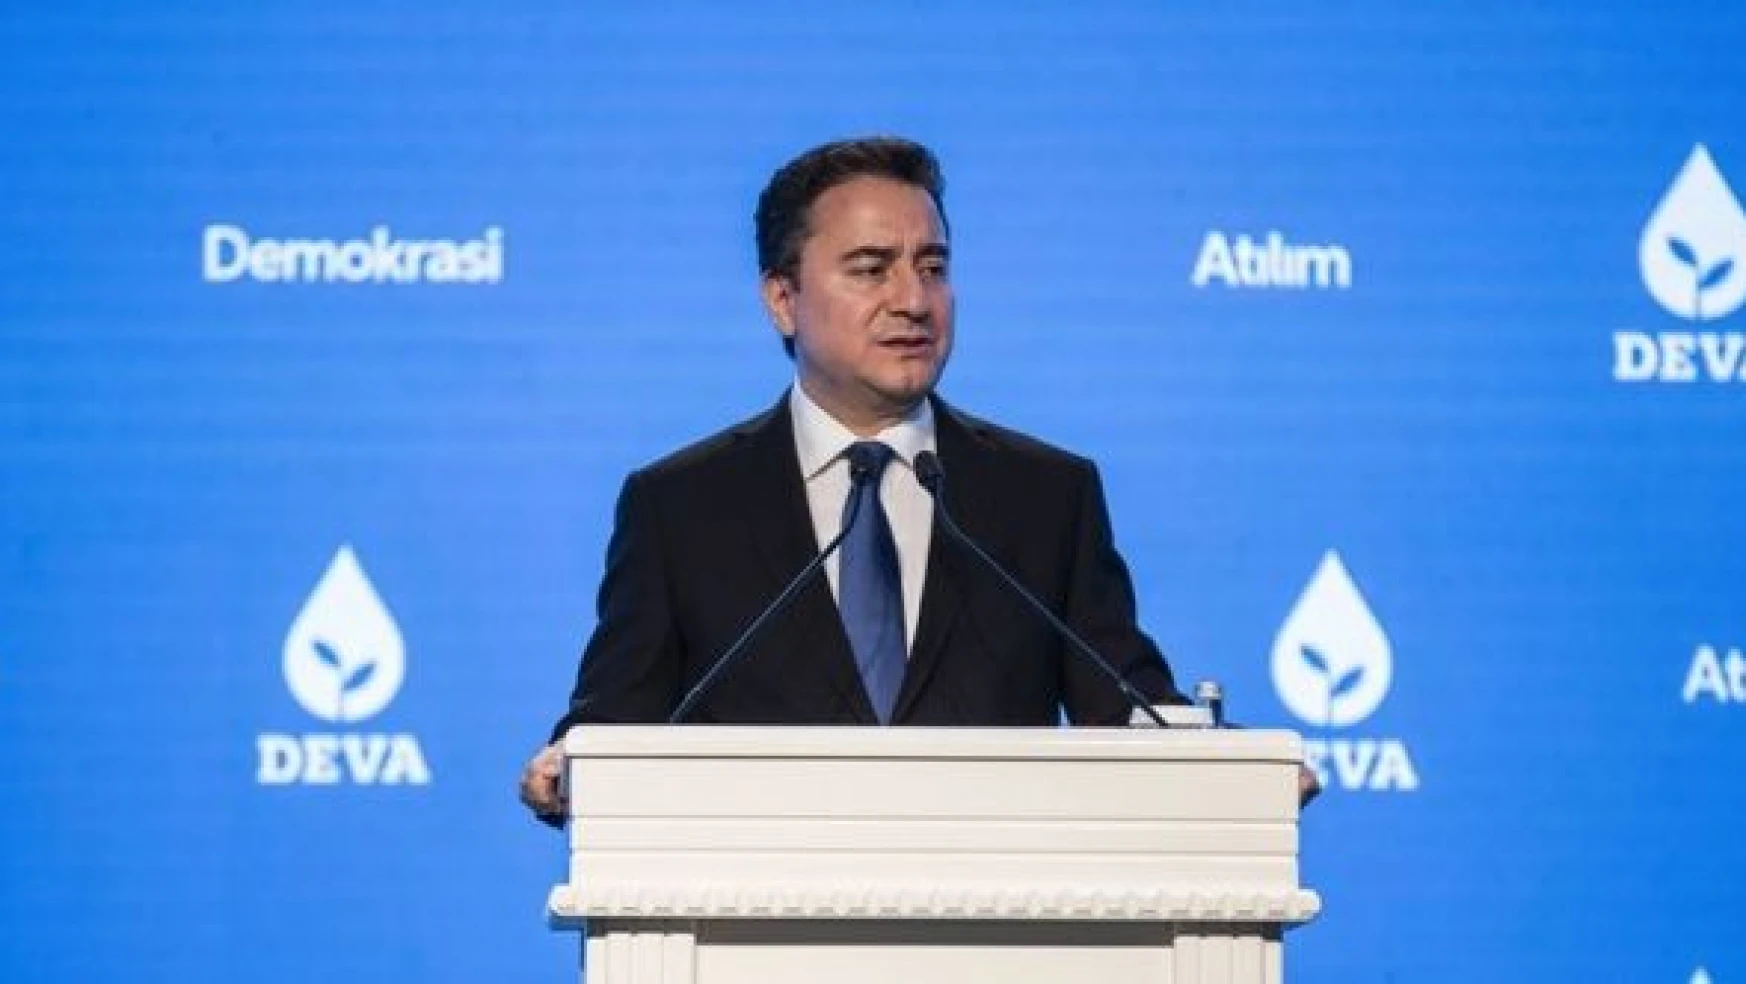 Ali Babacan: 'Müsait bir yerde iktidarı indireceğiz'